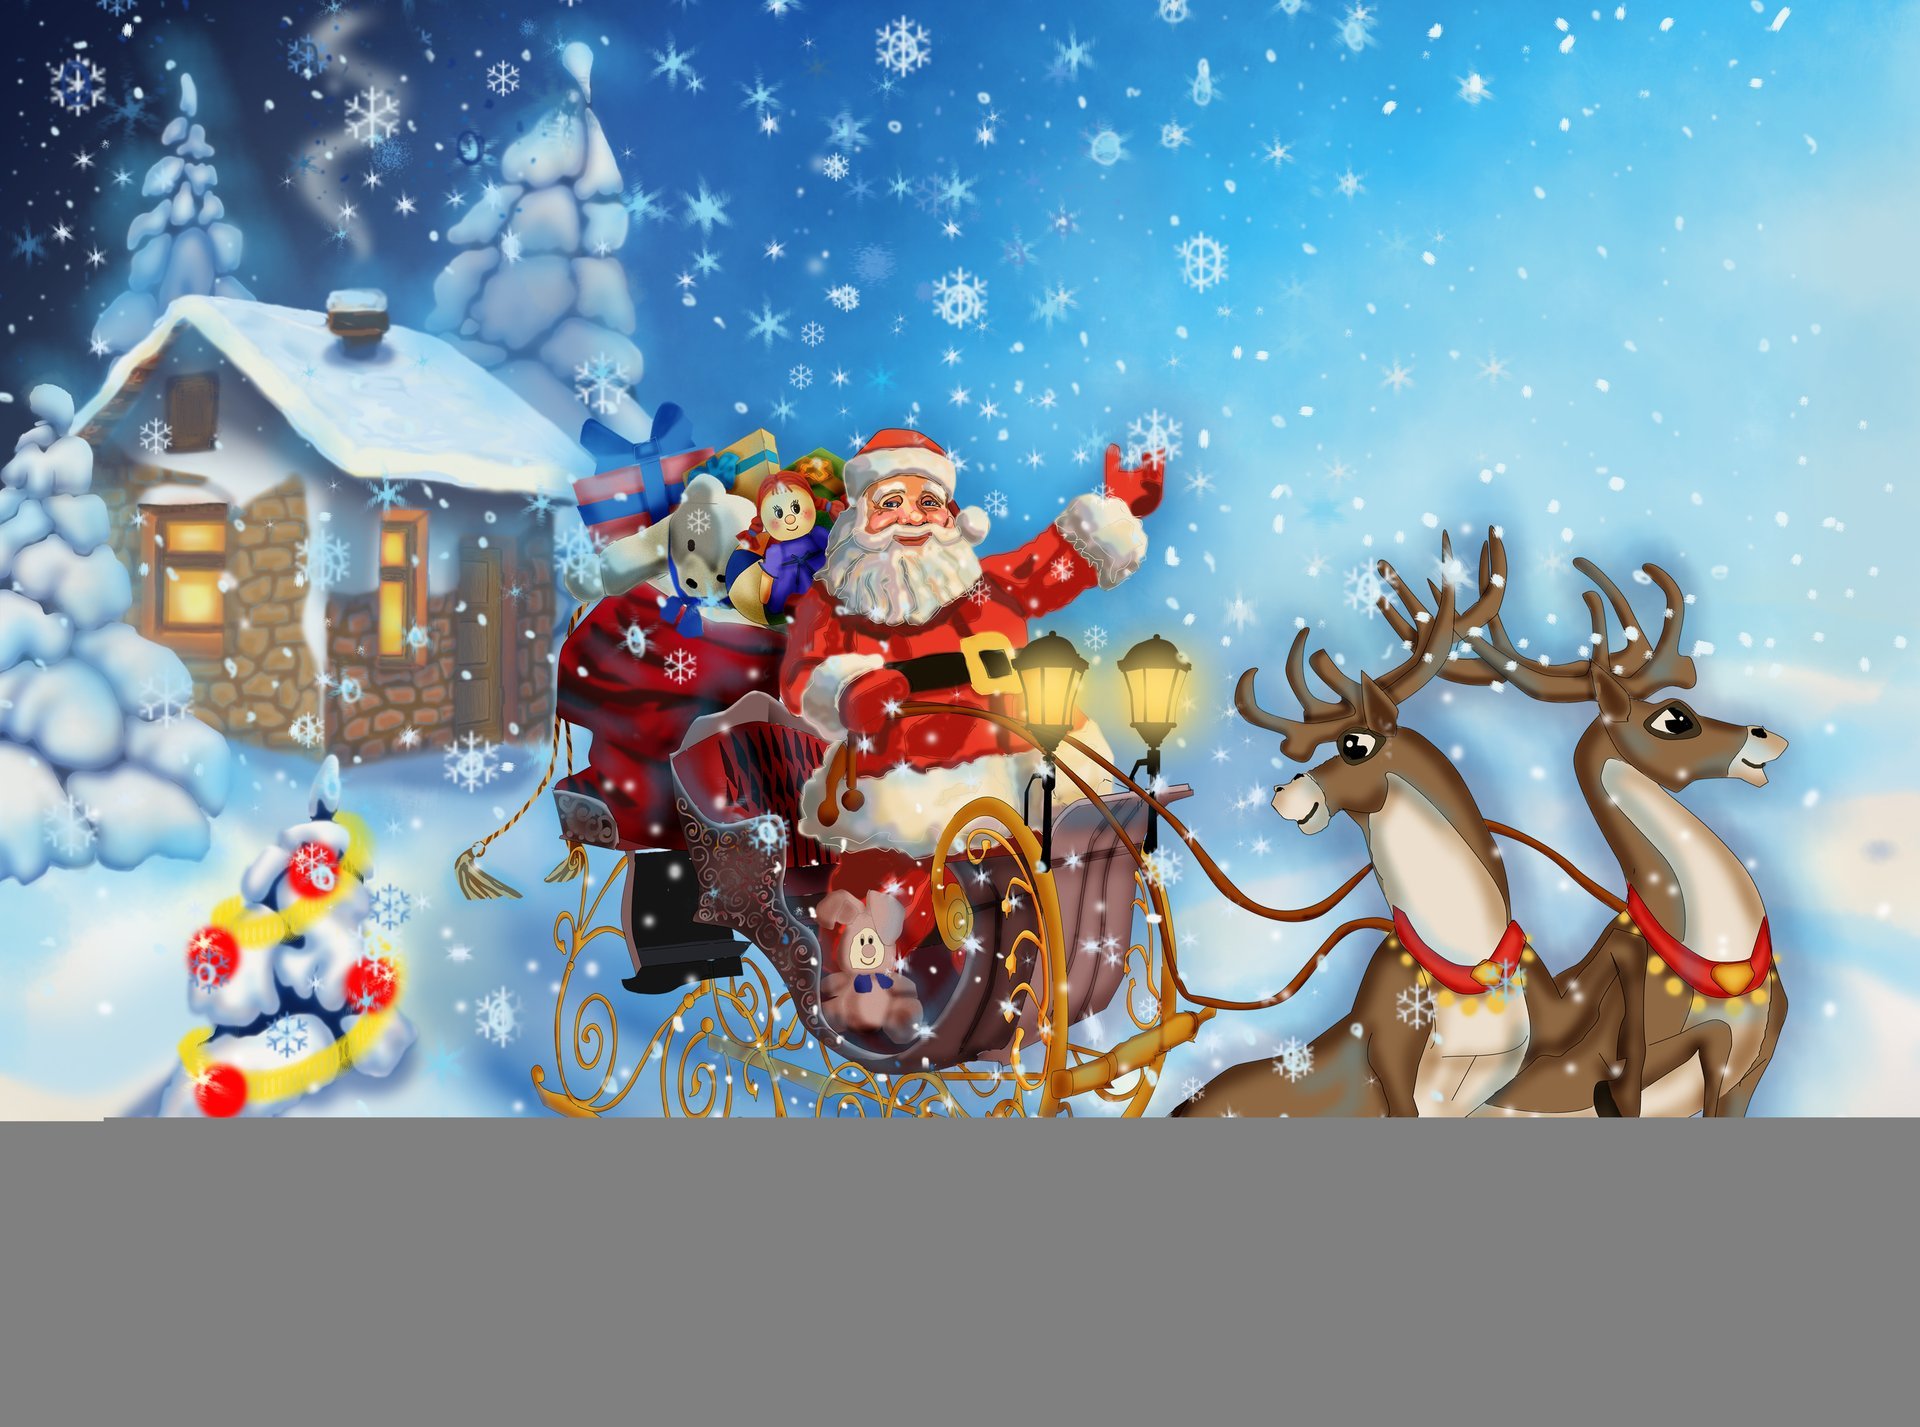 санта клаус приходит счастливого рождества рождественская елка новый год снег дом олени санта санях подарки игрушки санта-клаус приходит с рождеством христовым елка северный олень